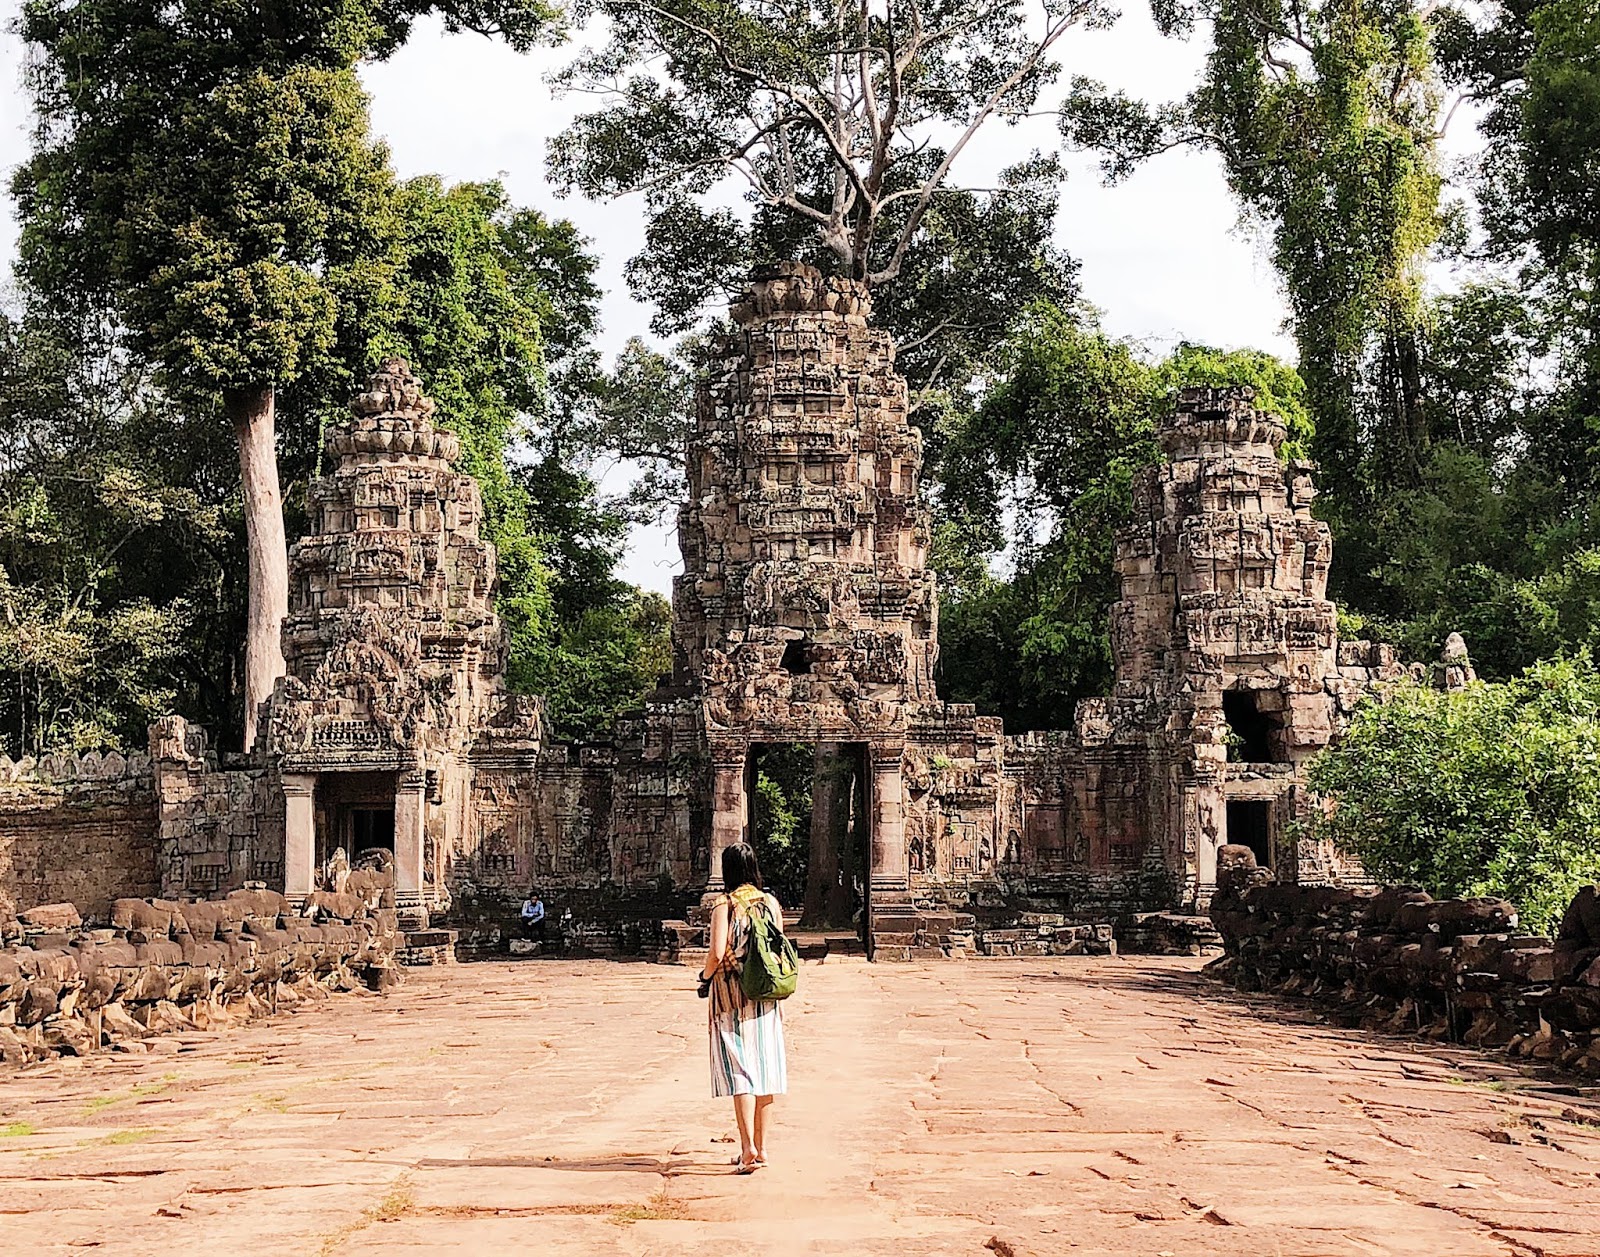 Siem Reap: Real Life Temple Run